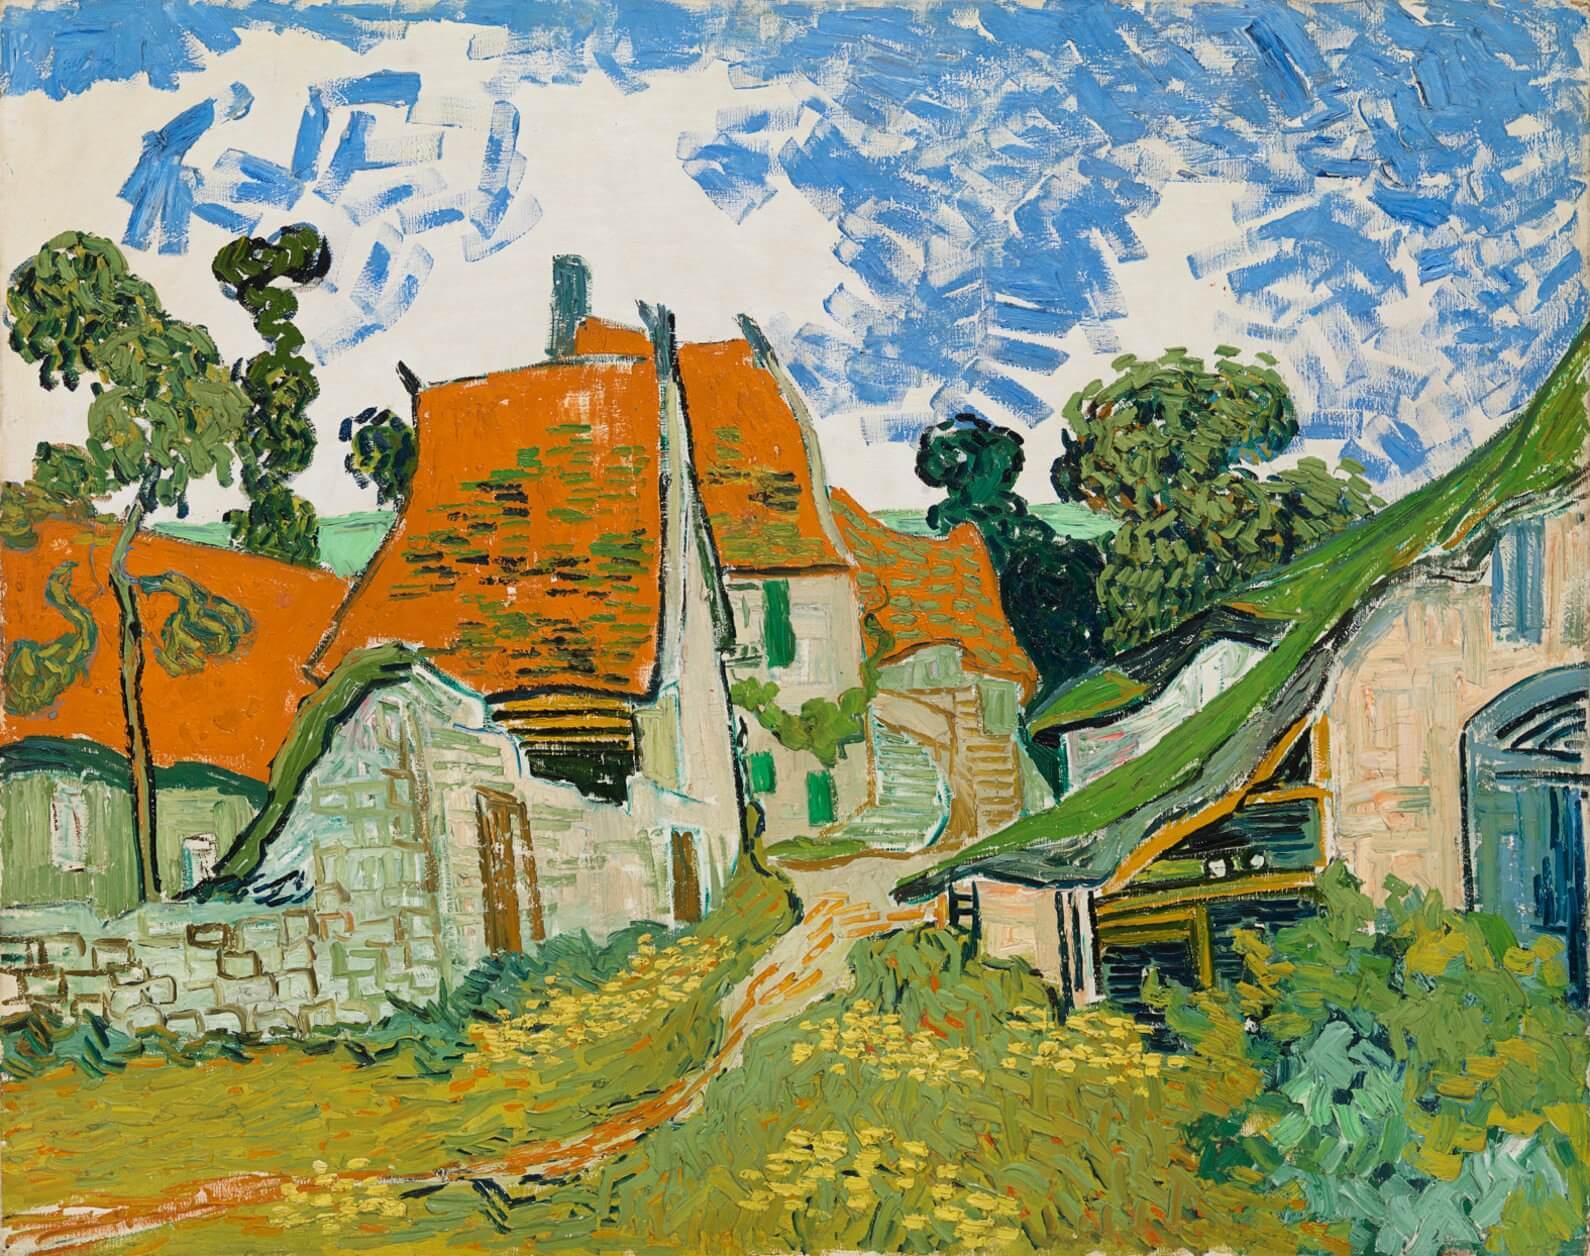 Artwork: Vincent van Gogh: Street Auvers-sur-Oise, 1890